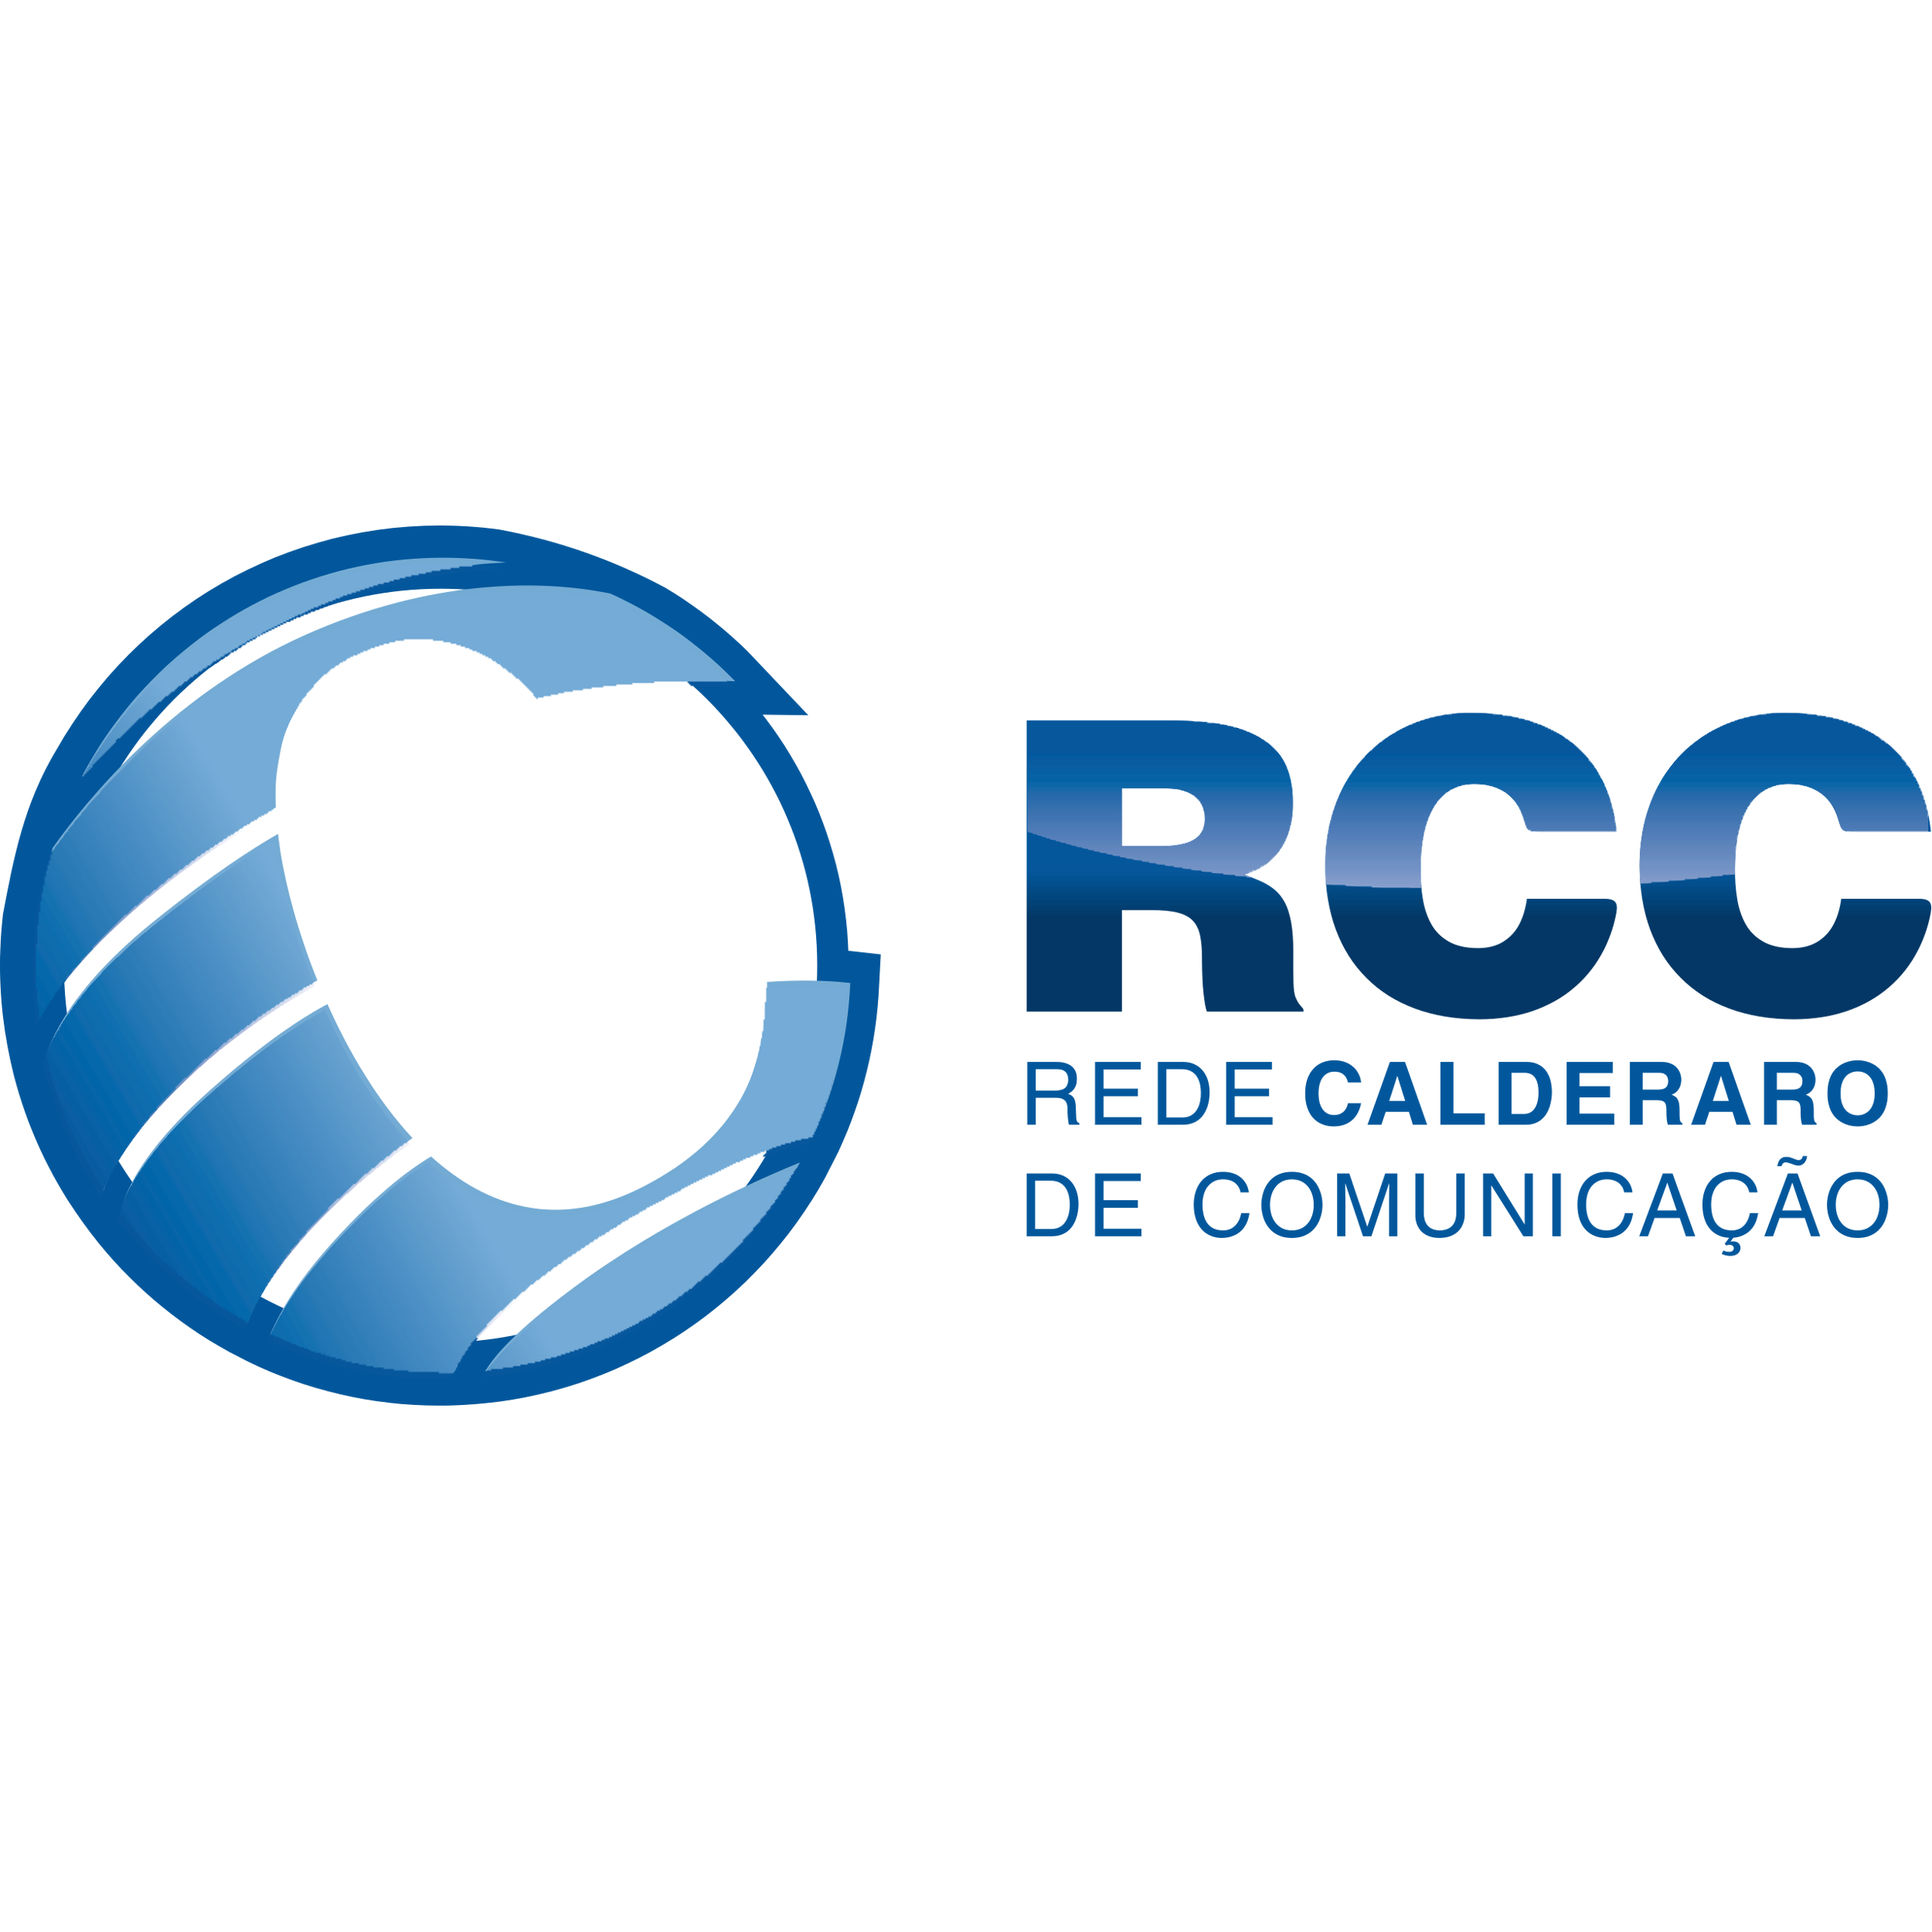 Rede Calderaro De Comunicacao Logo Transparent Image